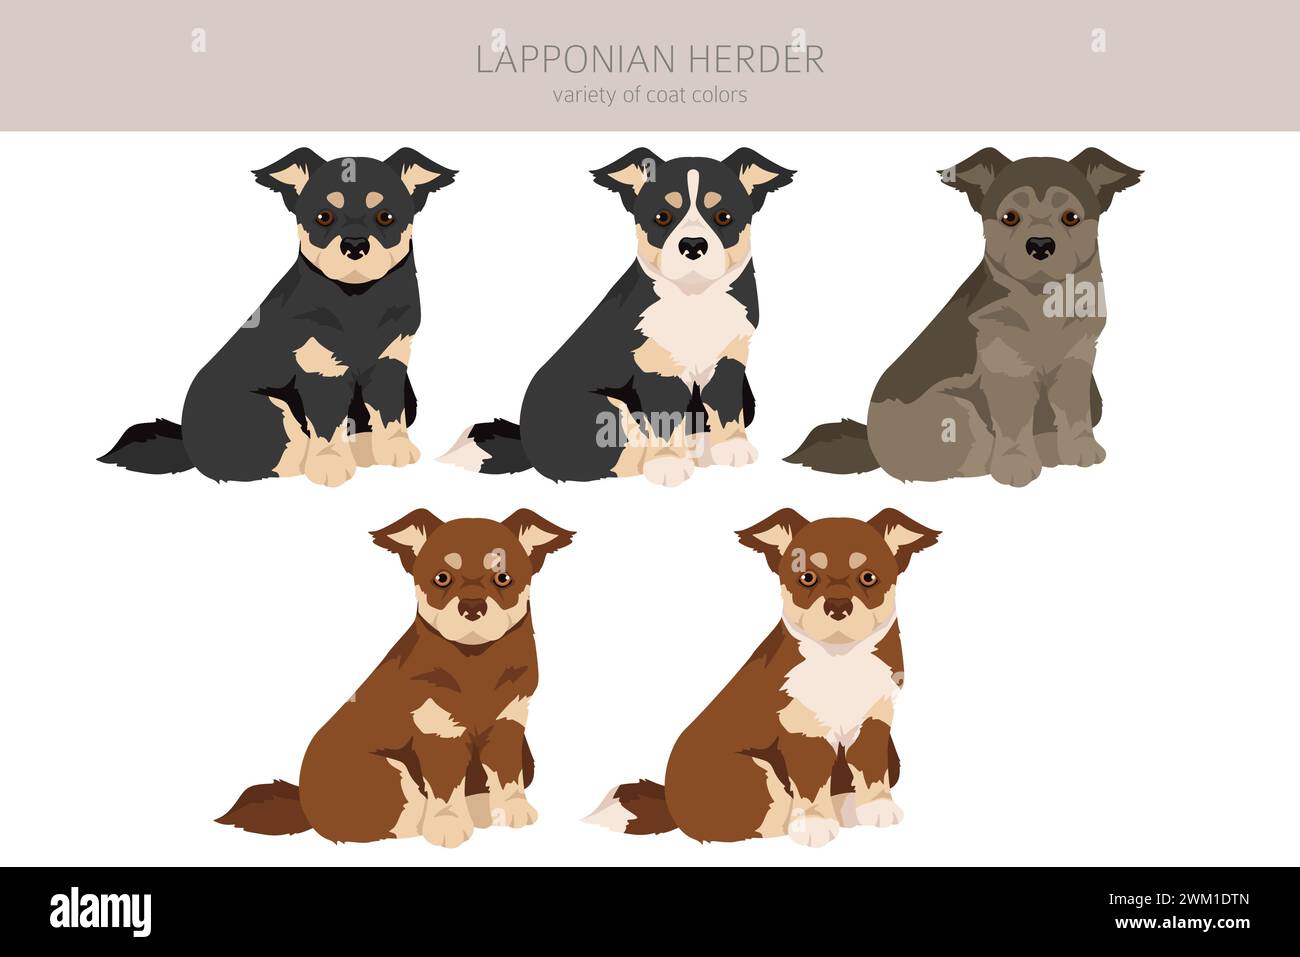 Lapponian Herder cucciolo clipart. Pose diverse, set di colori per cappotti. Illustrazione vettoriale Illustrazione Vettoriale